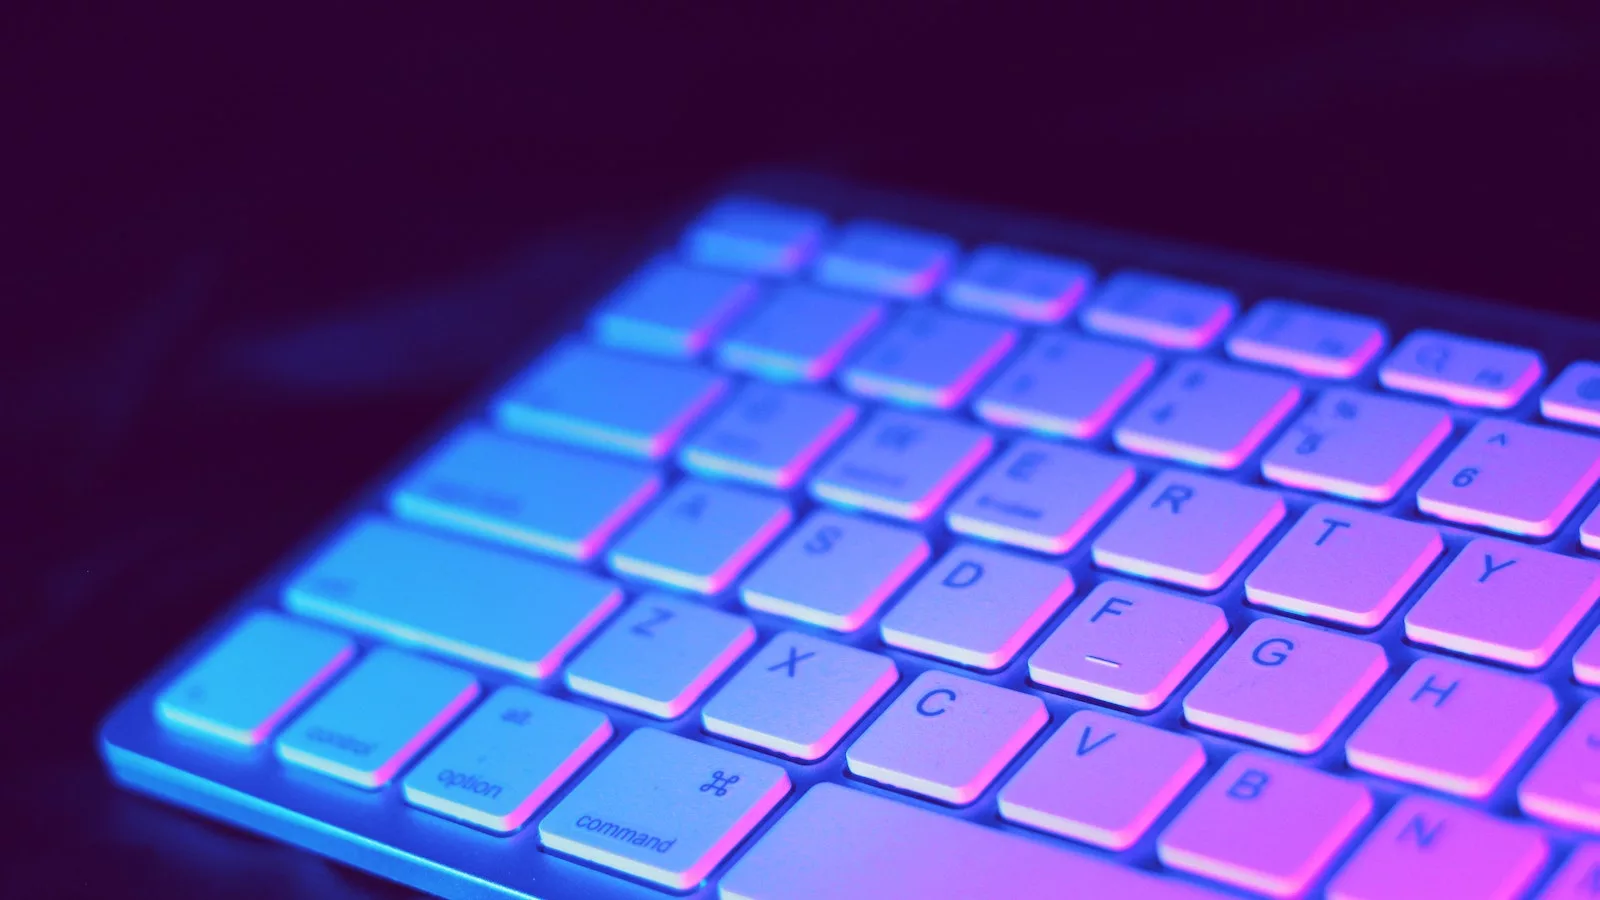 mac keyboard lit by purple light